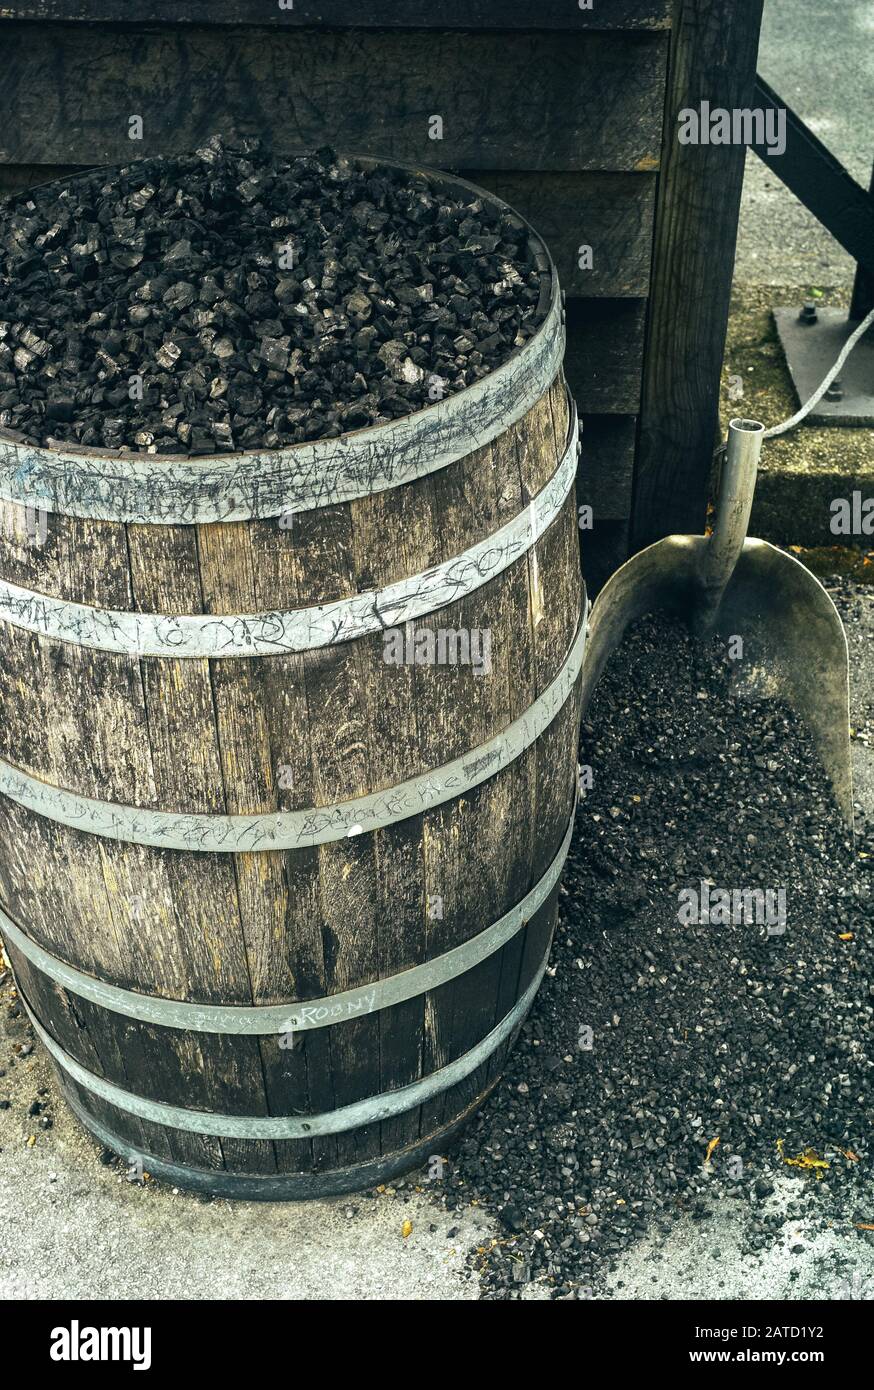 Charbon de bois dans un barrel et un Shovel, utilisé pour Adouci le whisky Tennessee par filtration Banque D'Images